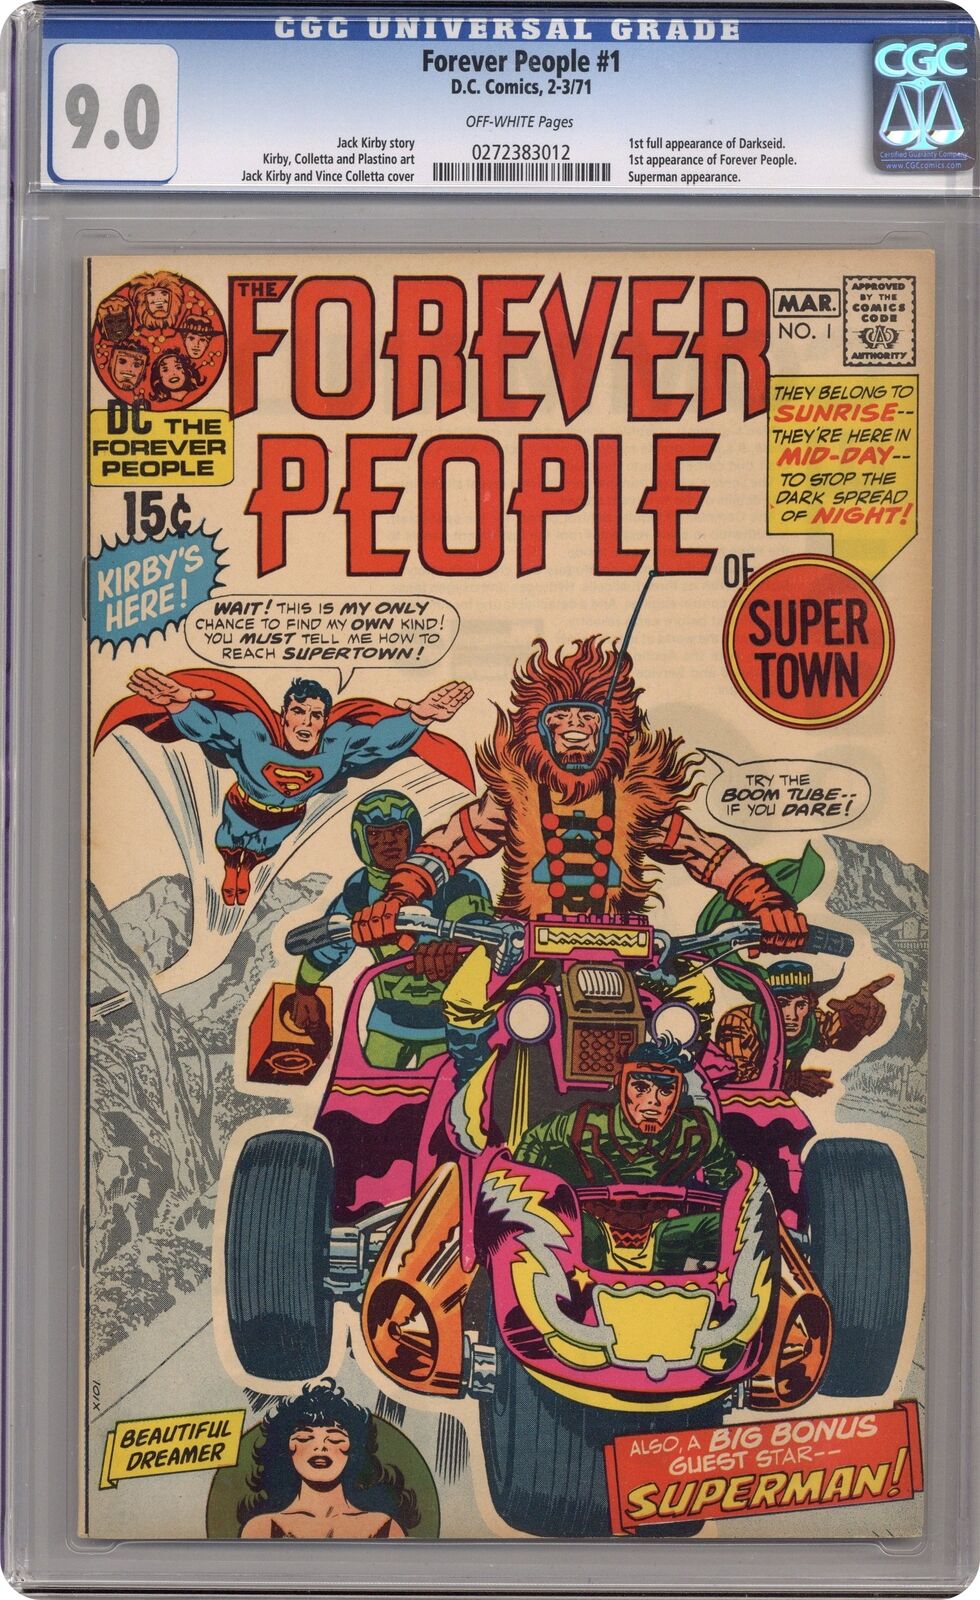 Forever People #1 CGC 9.0 1971 0272383012 1st full app. Darkseid